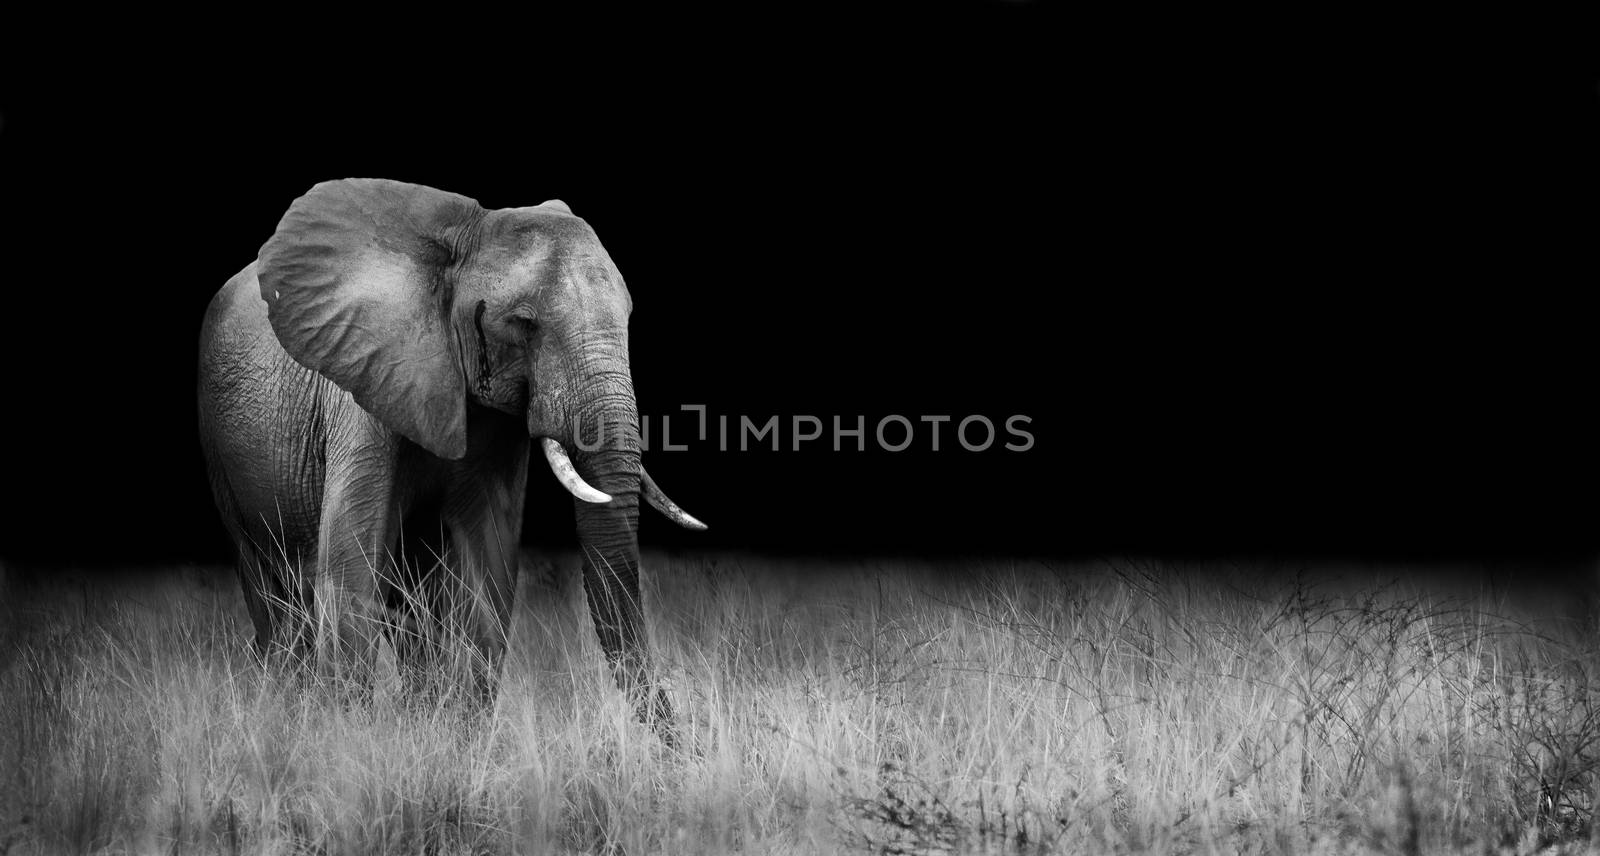 Elephant in the wild by donvanstaden